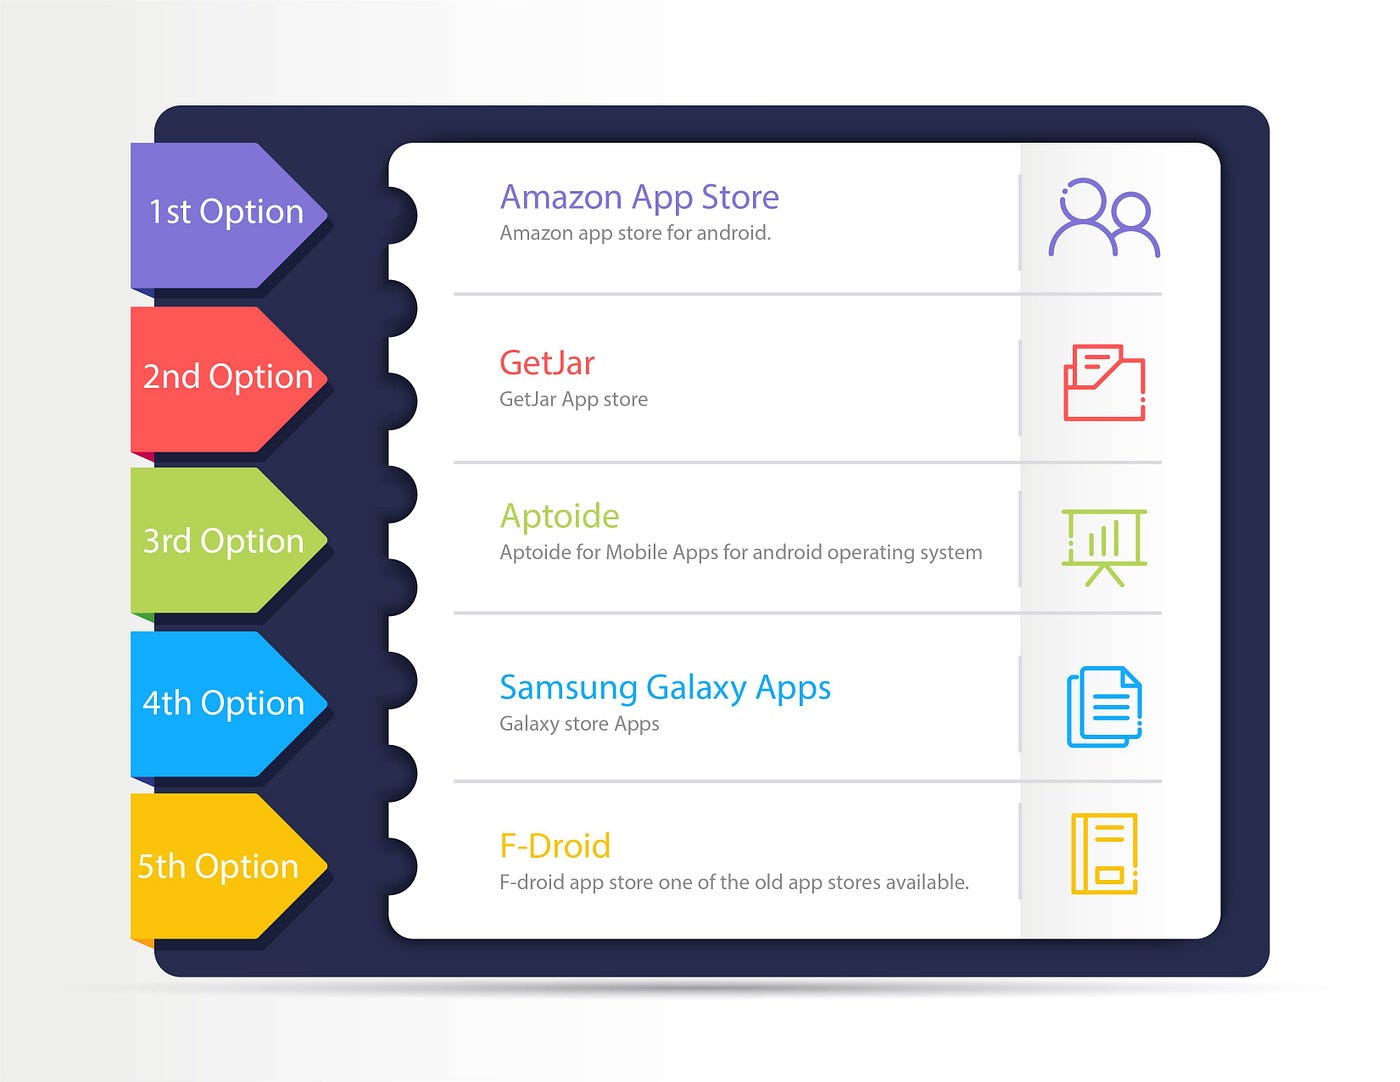 Aptoide ou Mobogenie: conheça as lojas de aplicativos para Android